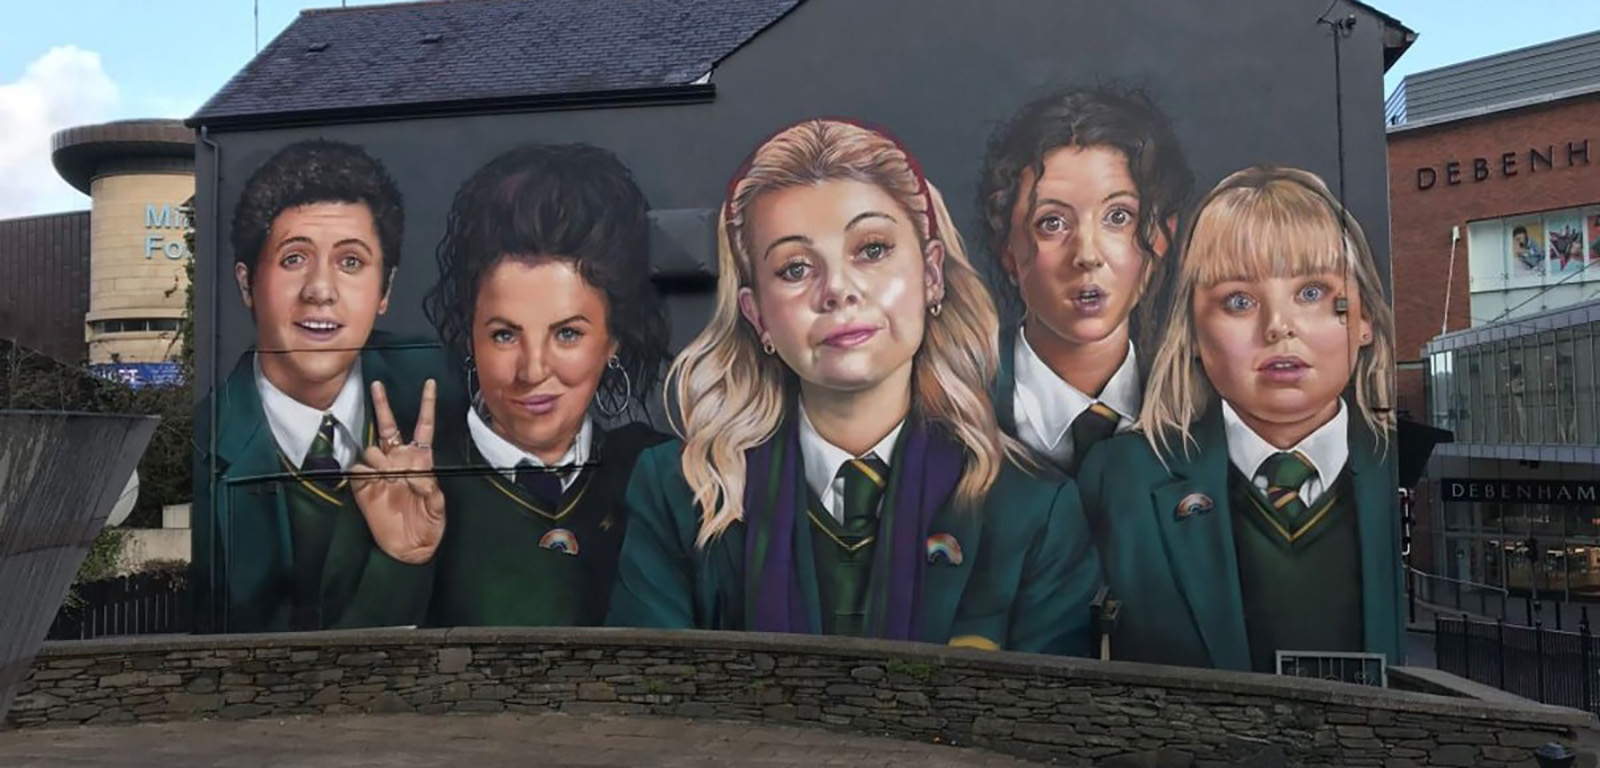 Derry girls